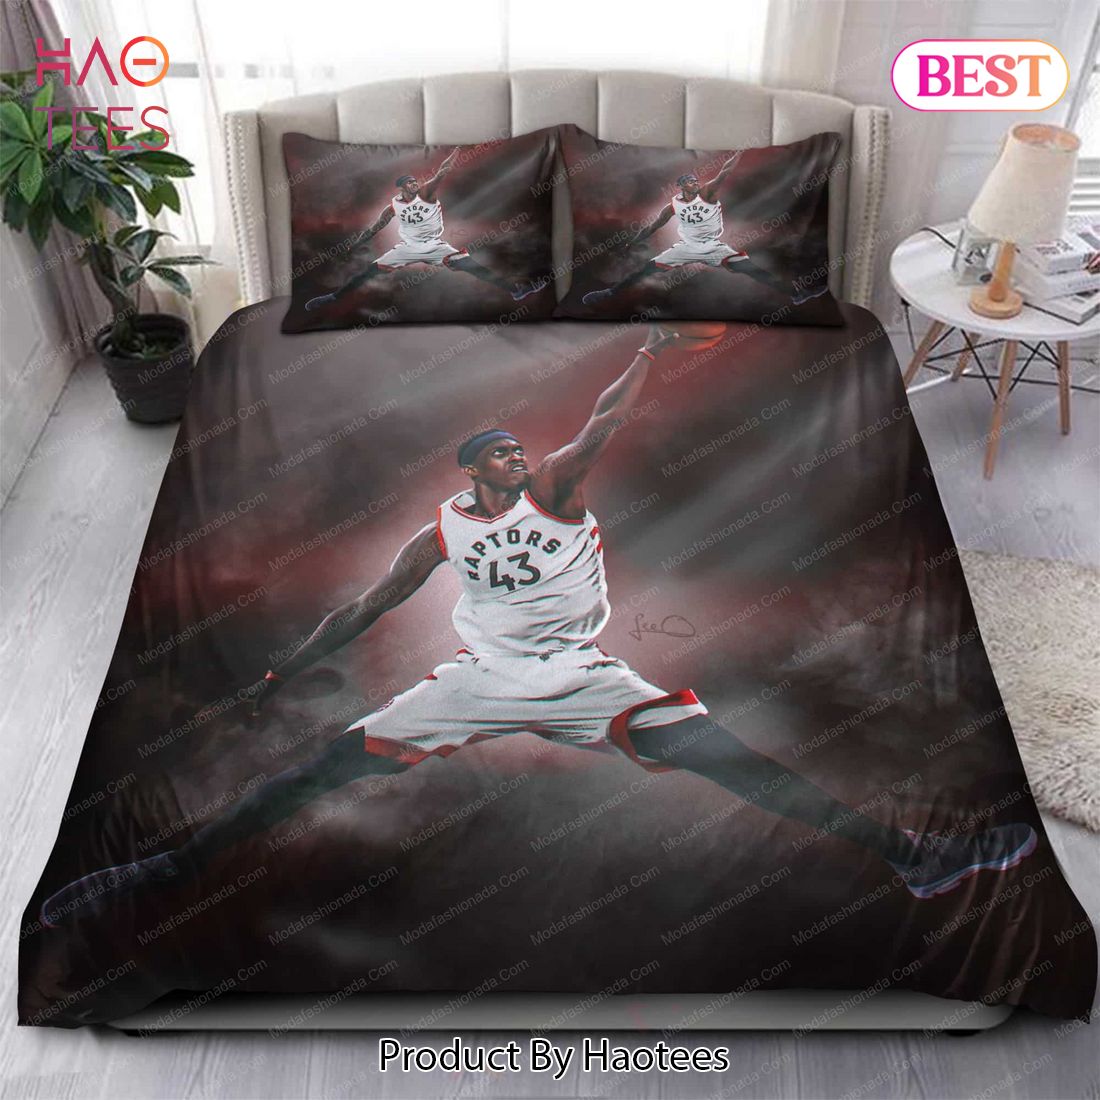 Buy Pascal Siakam Toronto Raptors NBA 185 Bedding Sets Bed Sets, Bedroom Sets, Comforter Sets, Duvet Cover, Bedspread